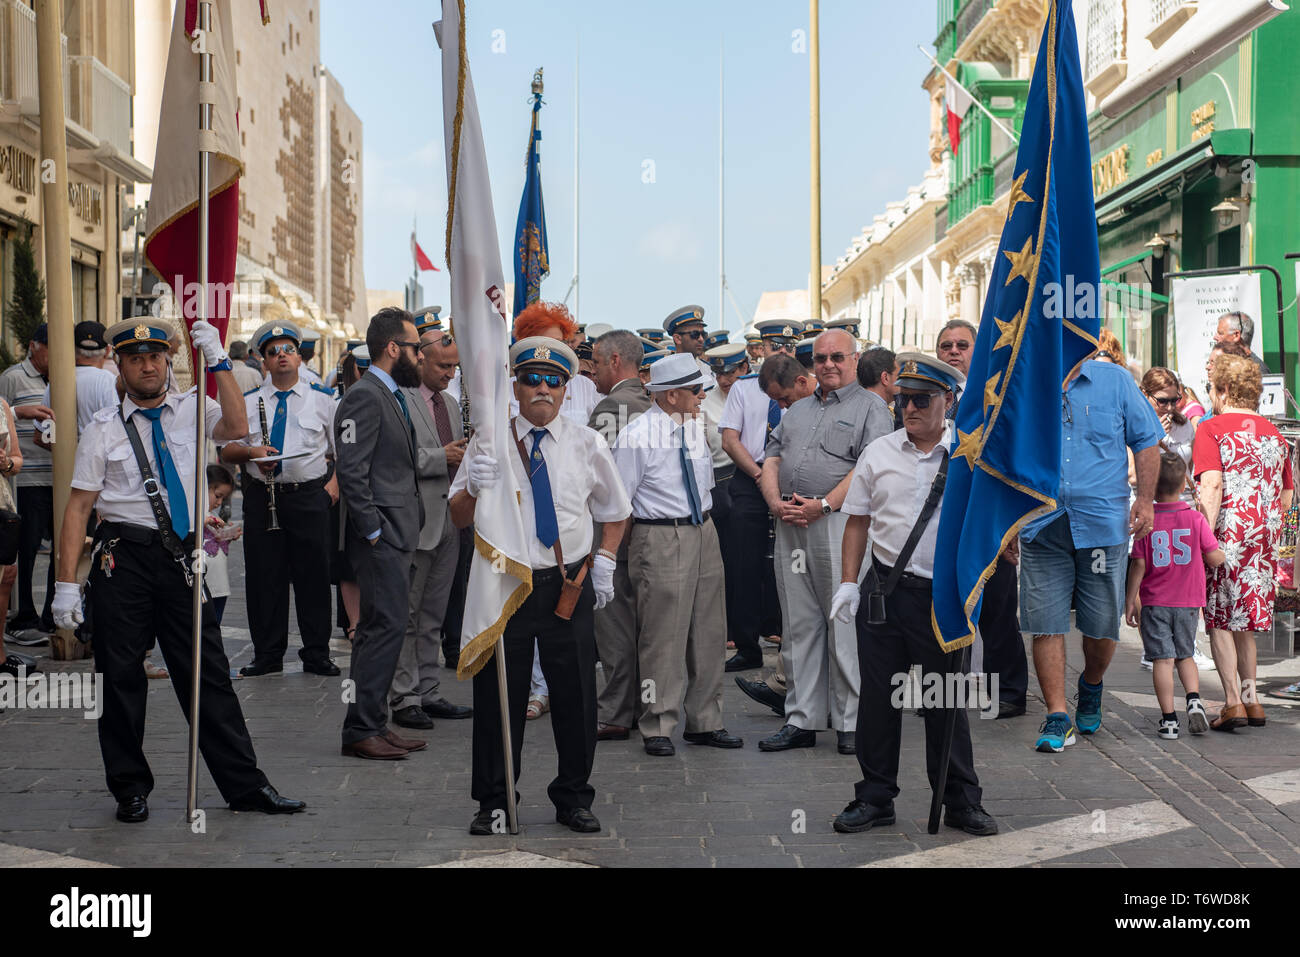 Un groupe de cuivres attend le début d'une procession le long de la rue Republic à la Valette célébrant la fête nationale de Sette Giugno Banque D'Images